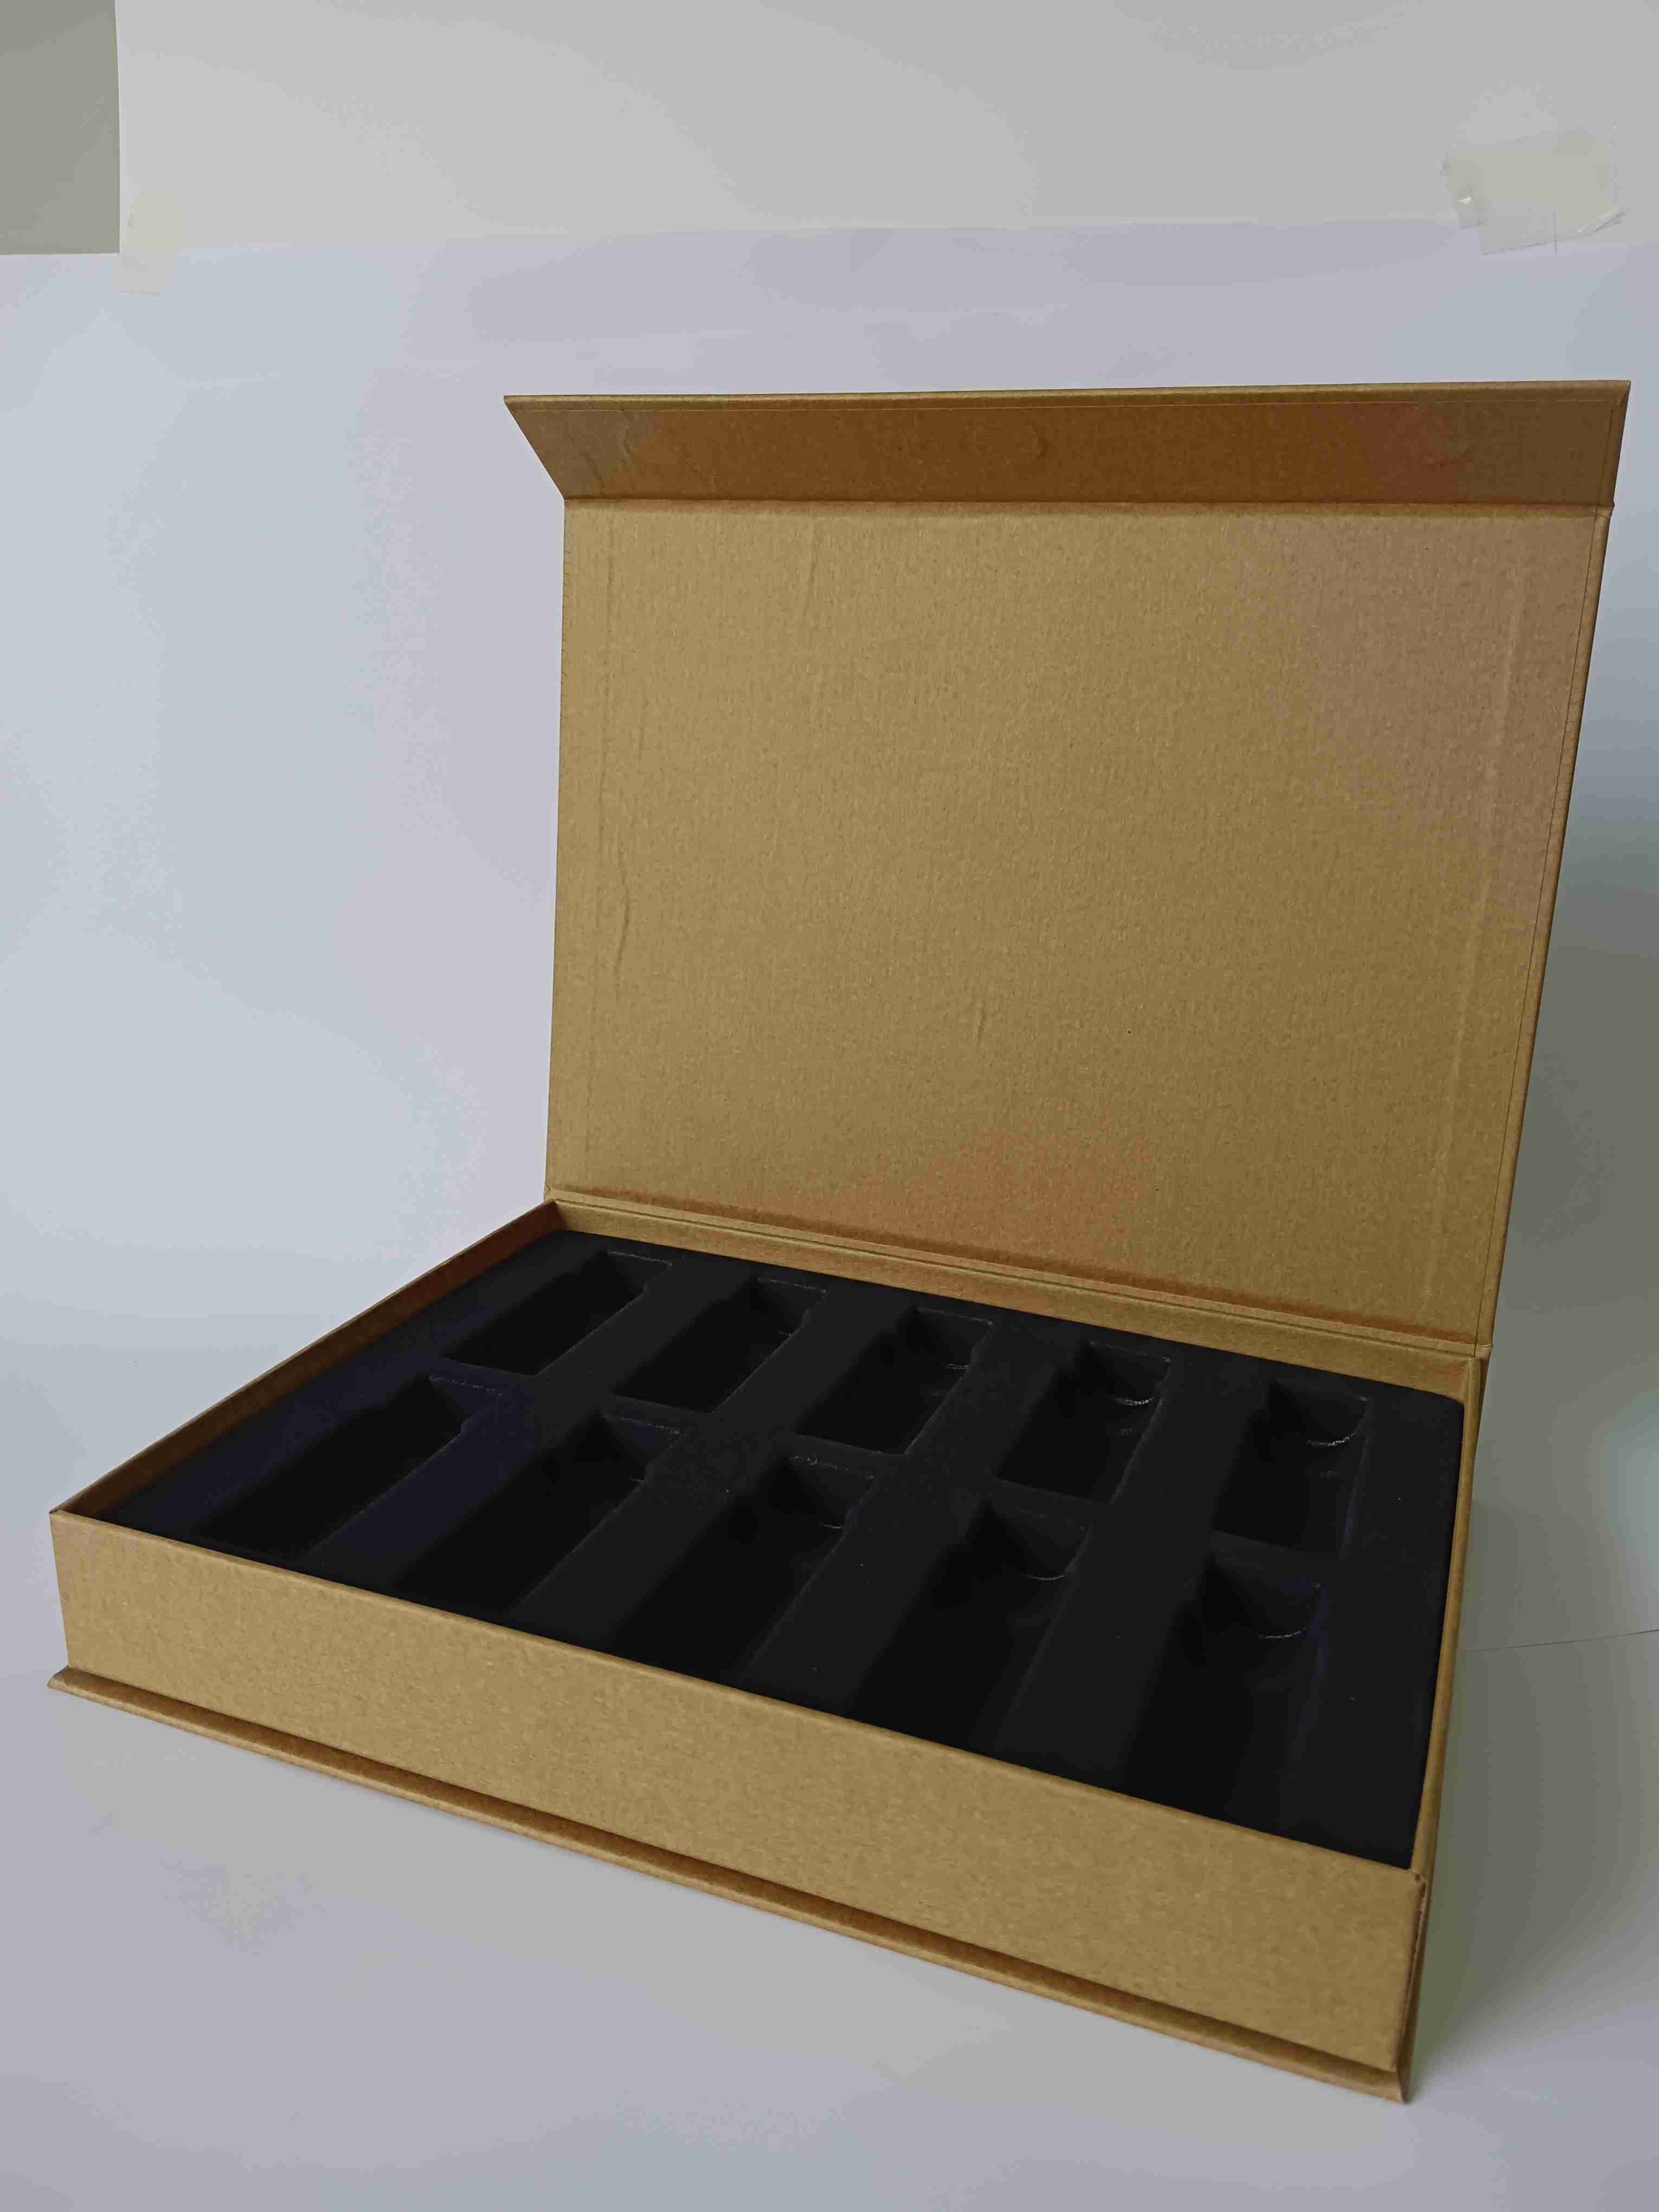 包装与印刷工程学院_礼物盒包装包装办法_深圳印刷包装盒